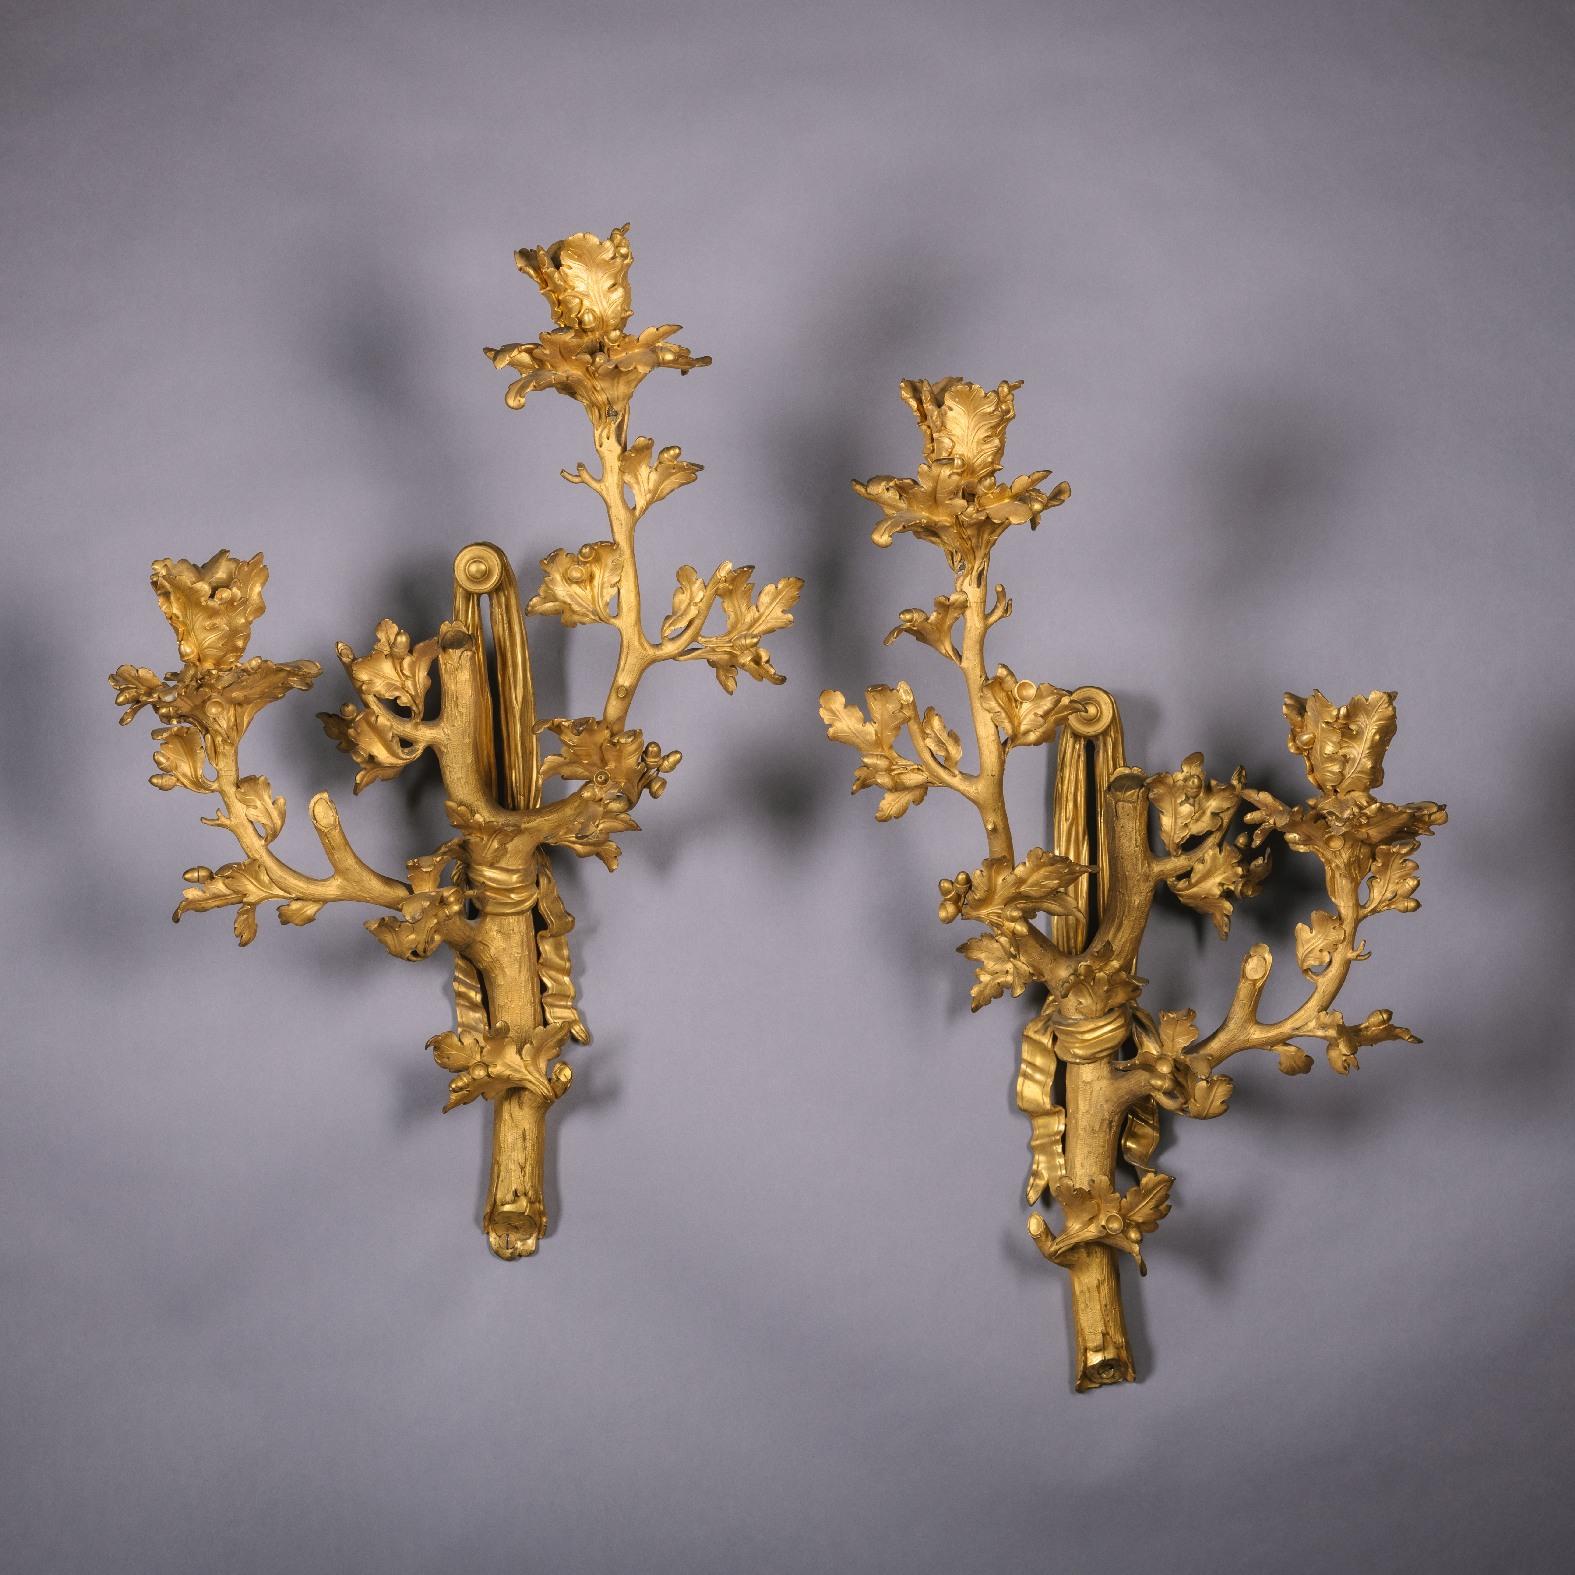 Une paire rare et très inhabituelle d'appliques murales en bronze doré à deux lumières. 

France, vers 1870.

Chacune est vigoureusement modelée dans le style Louis XV high rococo sous forme de branches de chêne et de glands suspendus à des